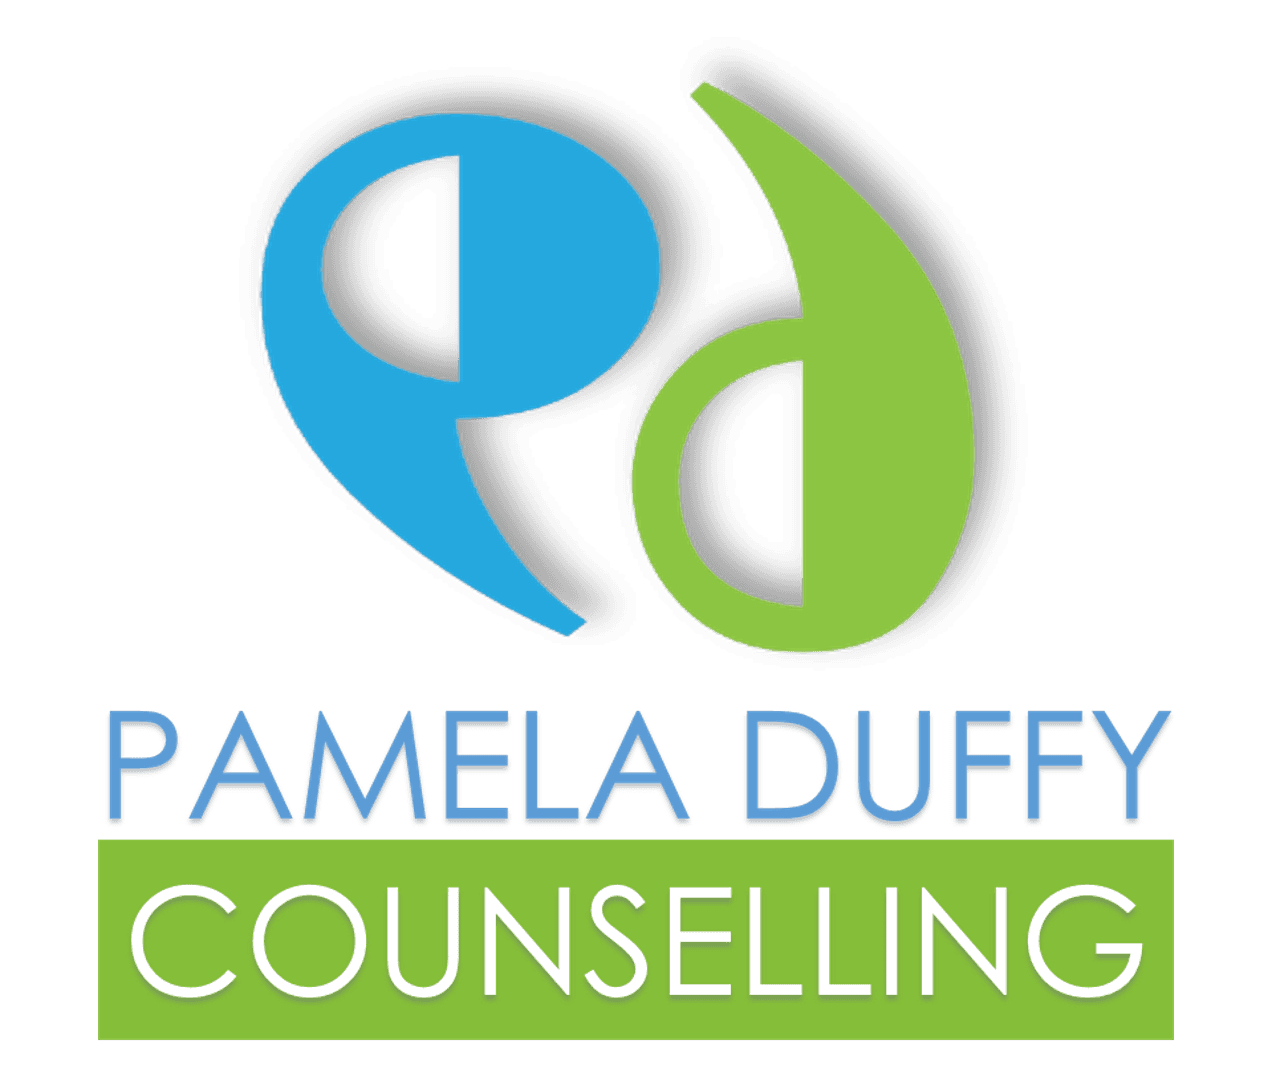 Pamela Duffy Counselling Company Logo